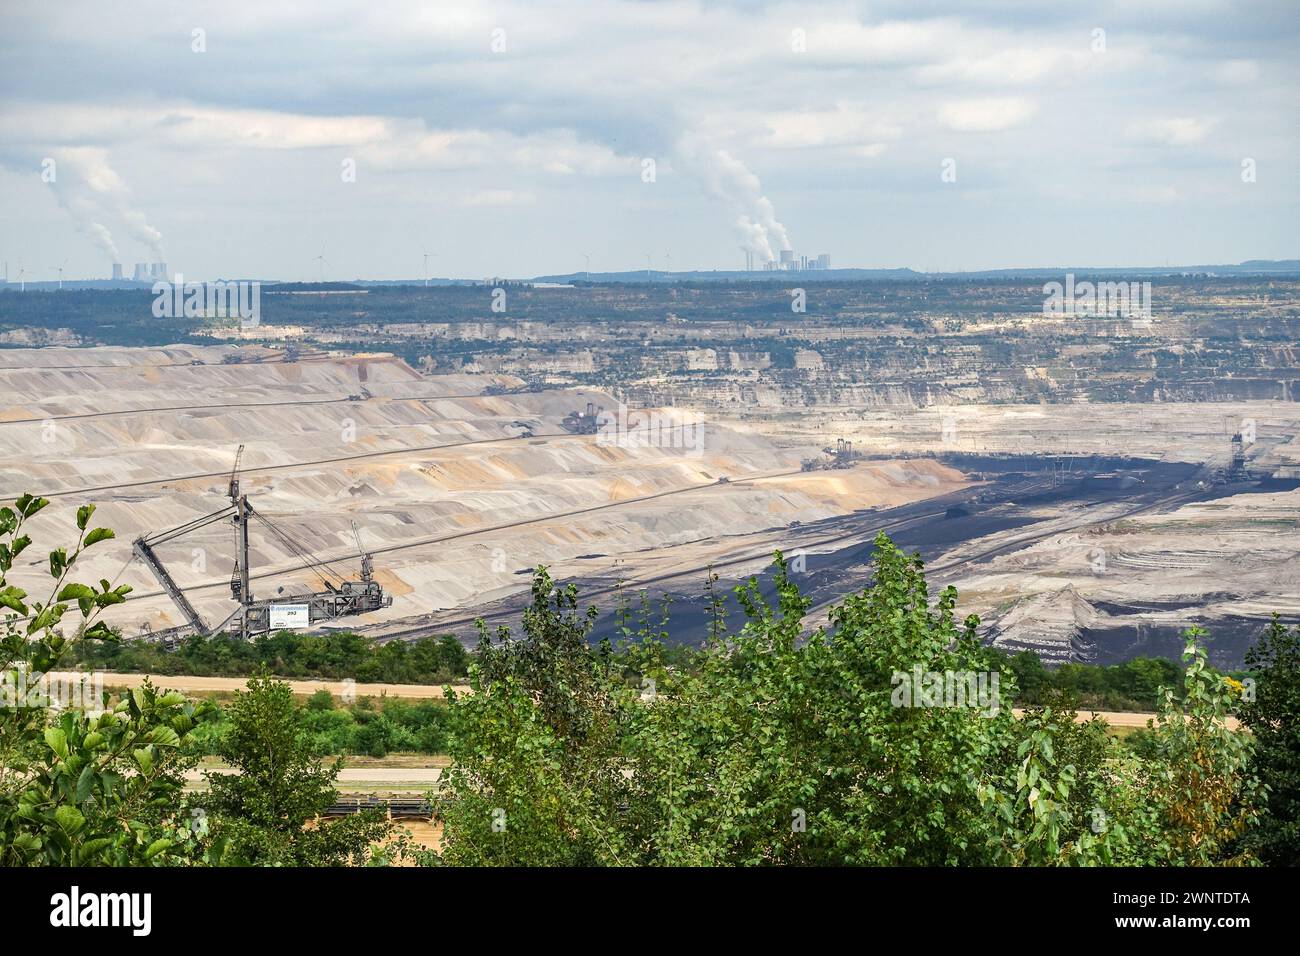 Miniera di lignite di superficie di Tagebau Hambach, Germania. Centrali elettriche di Frimmersdorf e Neurath sullo sfondo Foto Stock